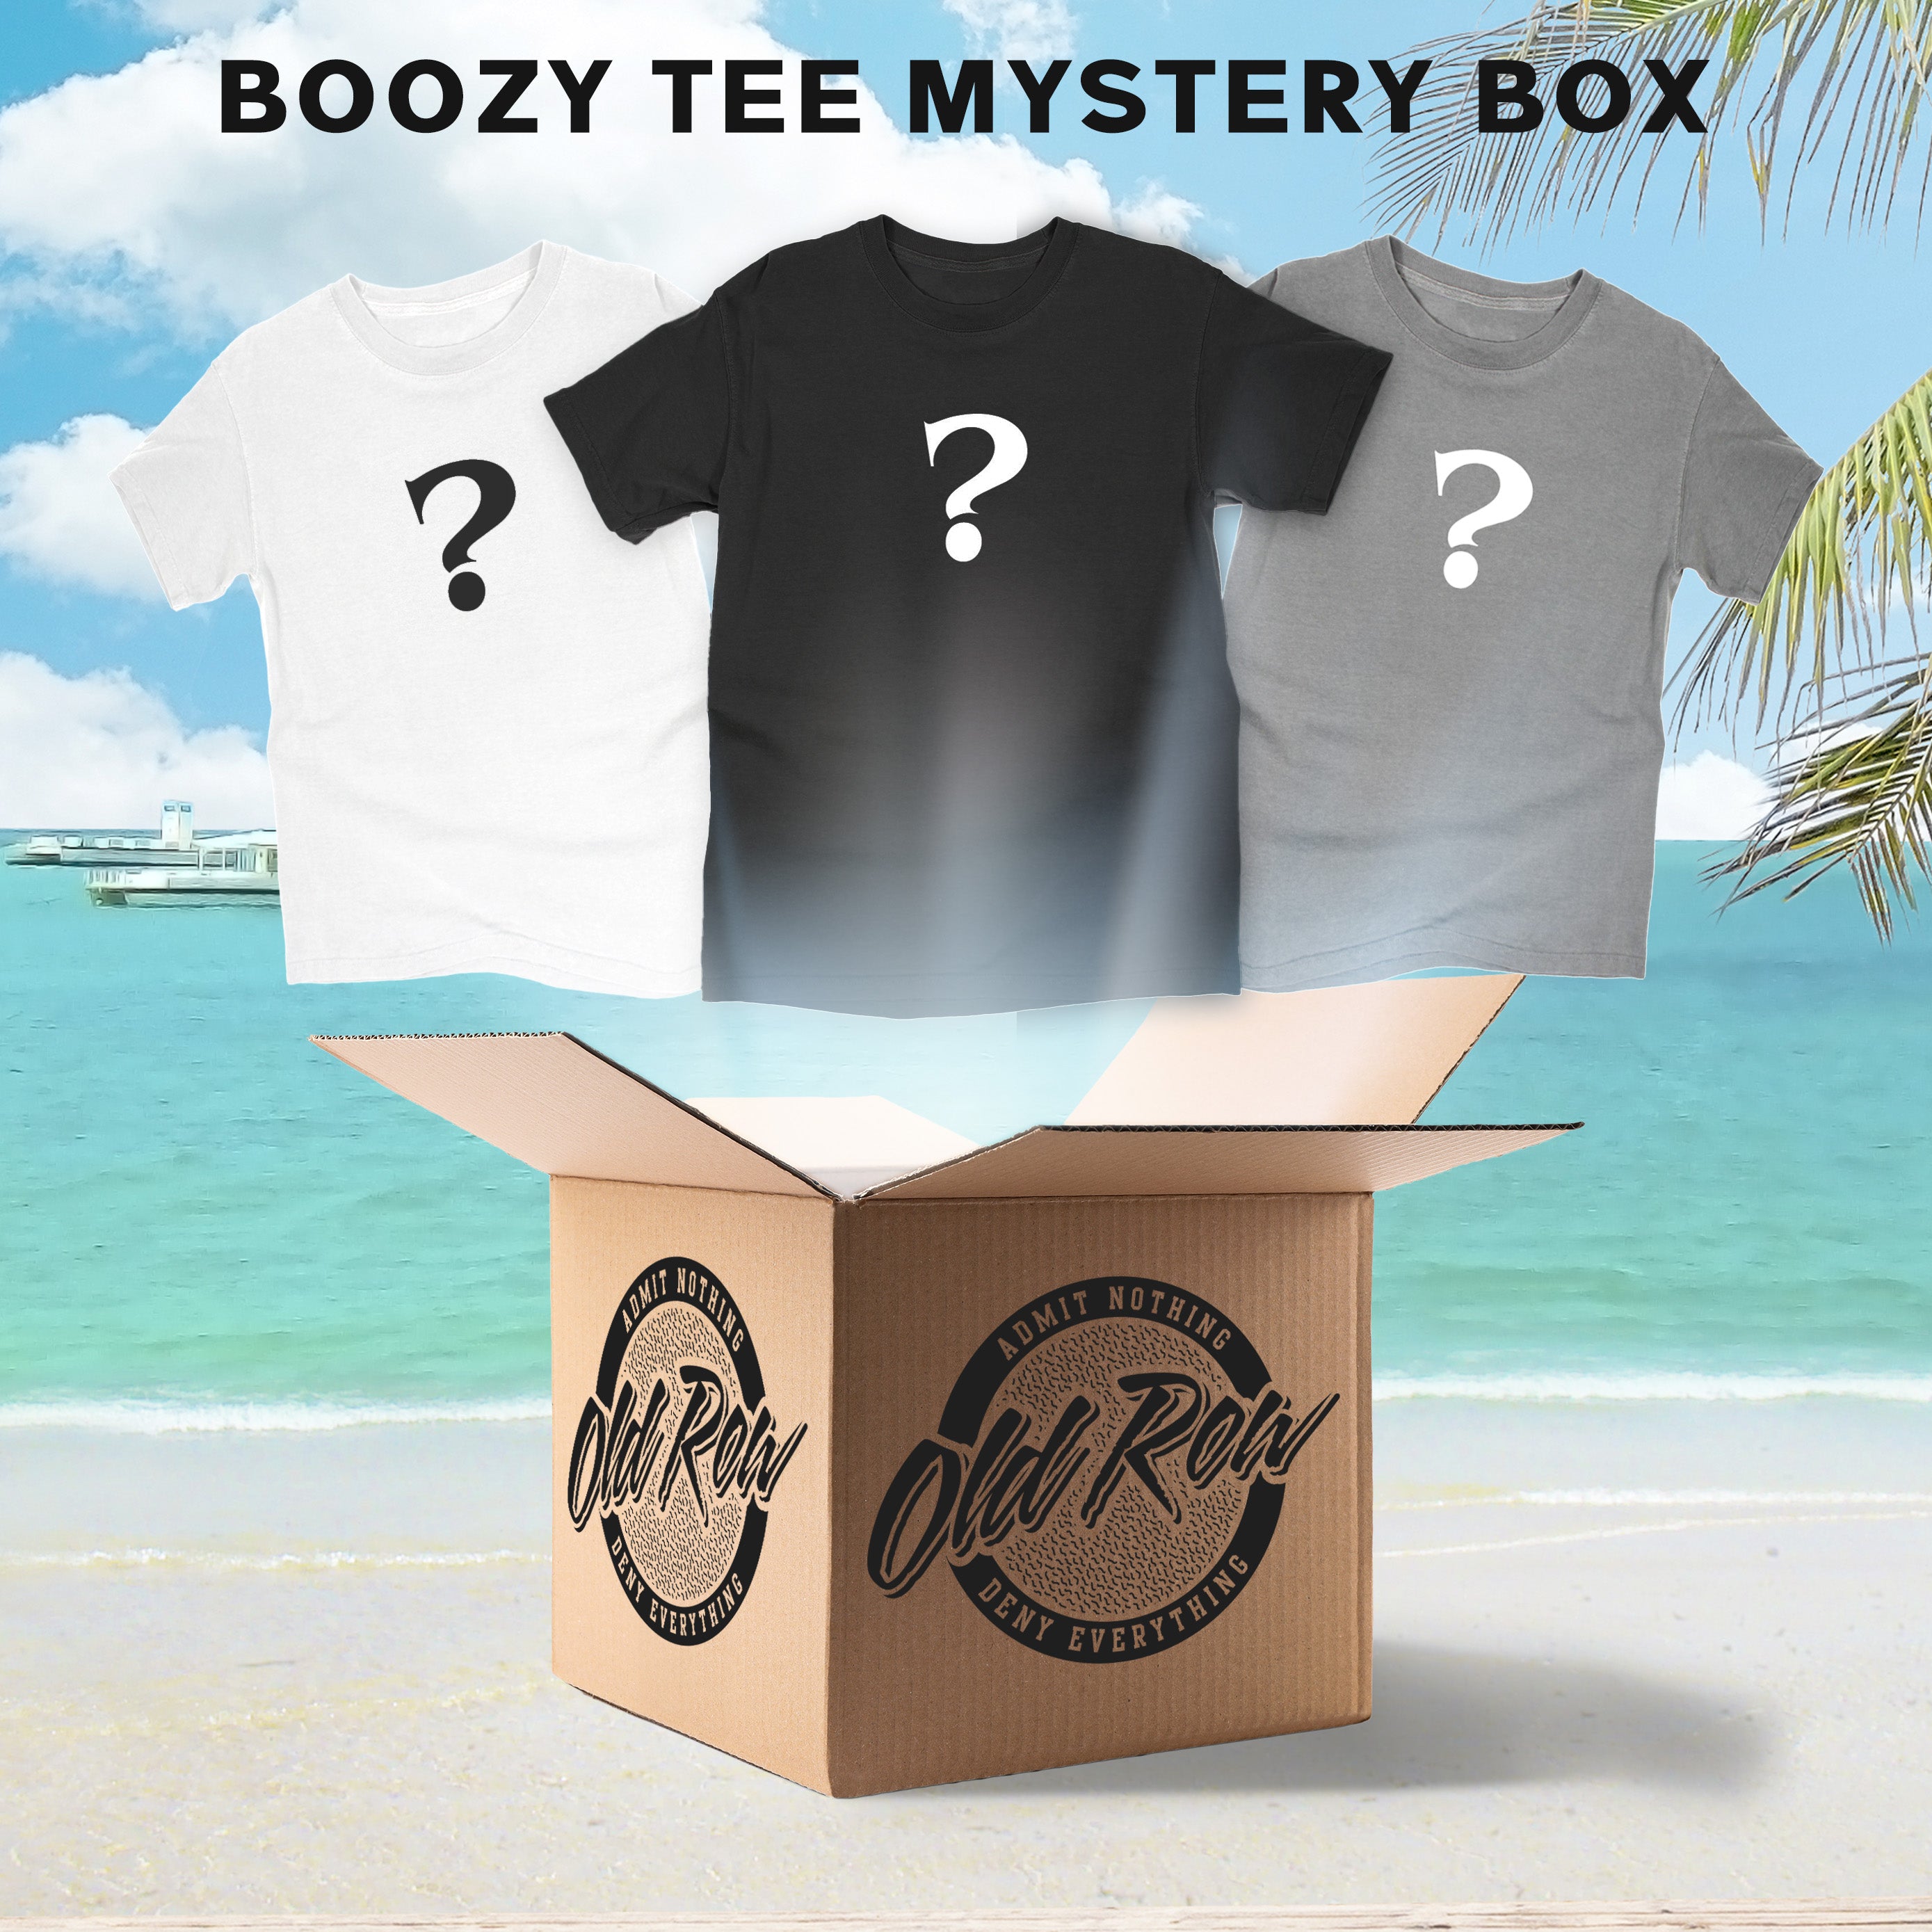 Boozy Mystery Tee Box I